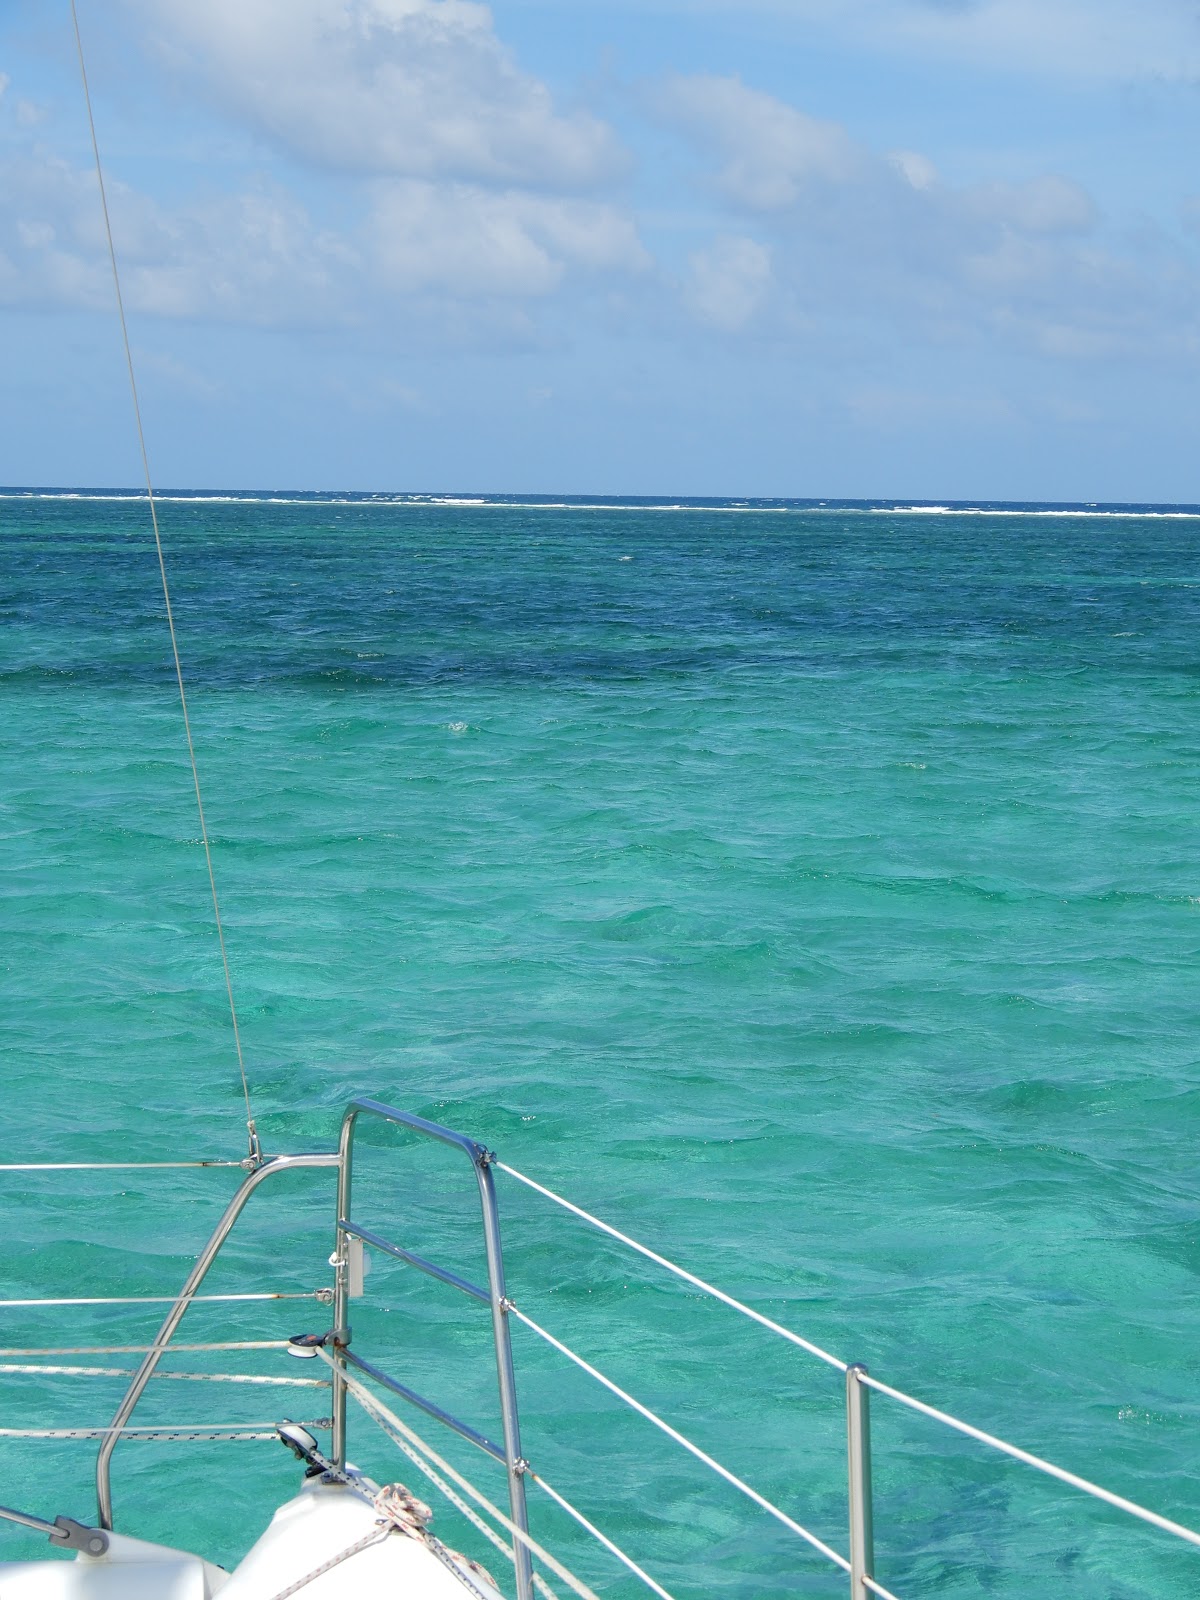 San Pedro Belize Tide Chart